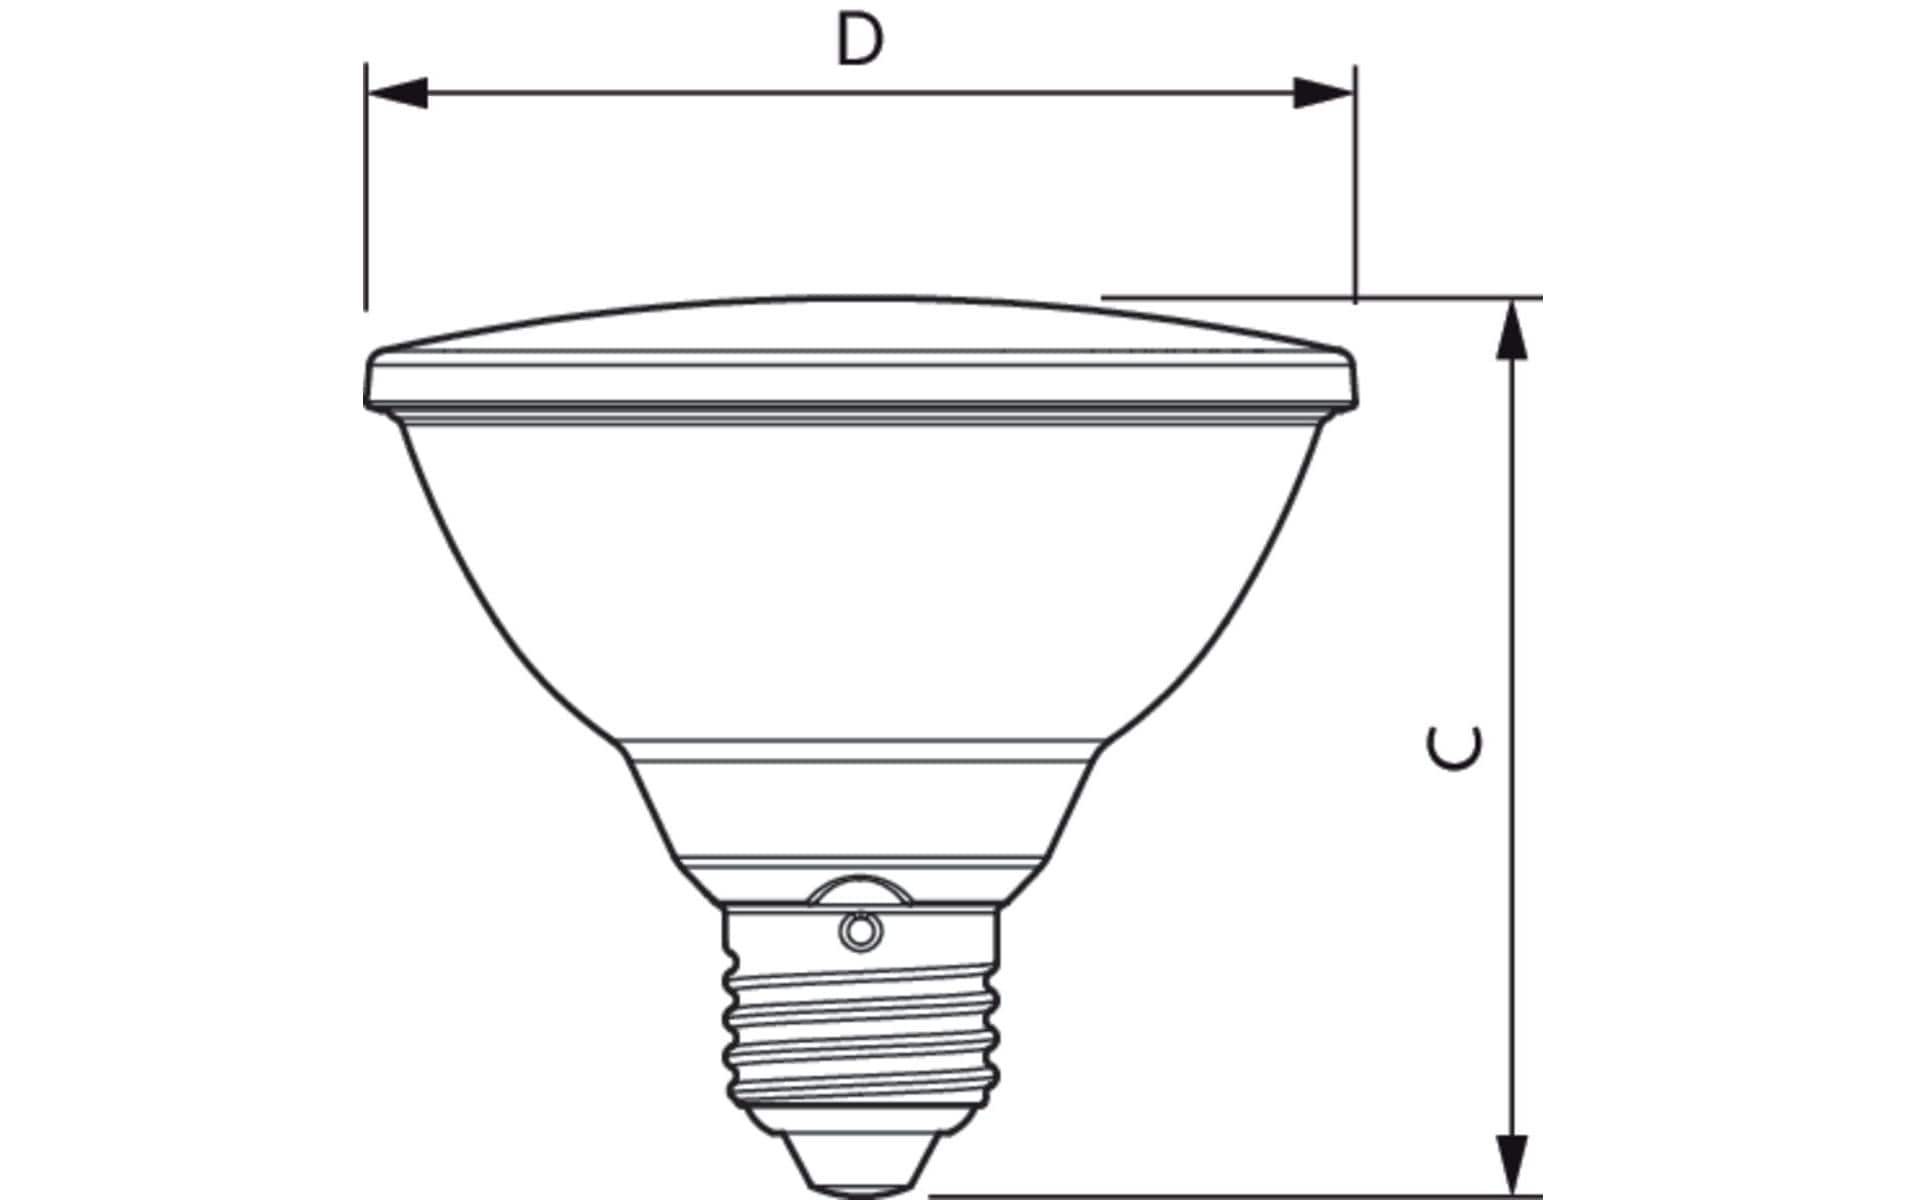 Philips Professional Lampe MAS LEDspot VLE D 9.5-75W 930 PAR30S 25D